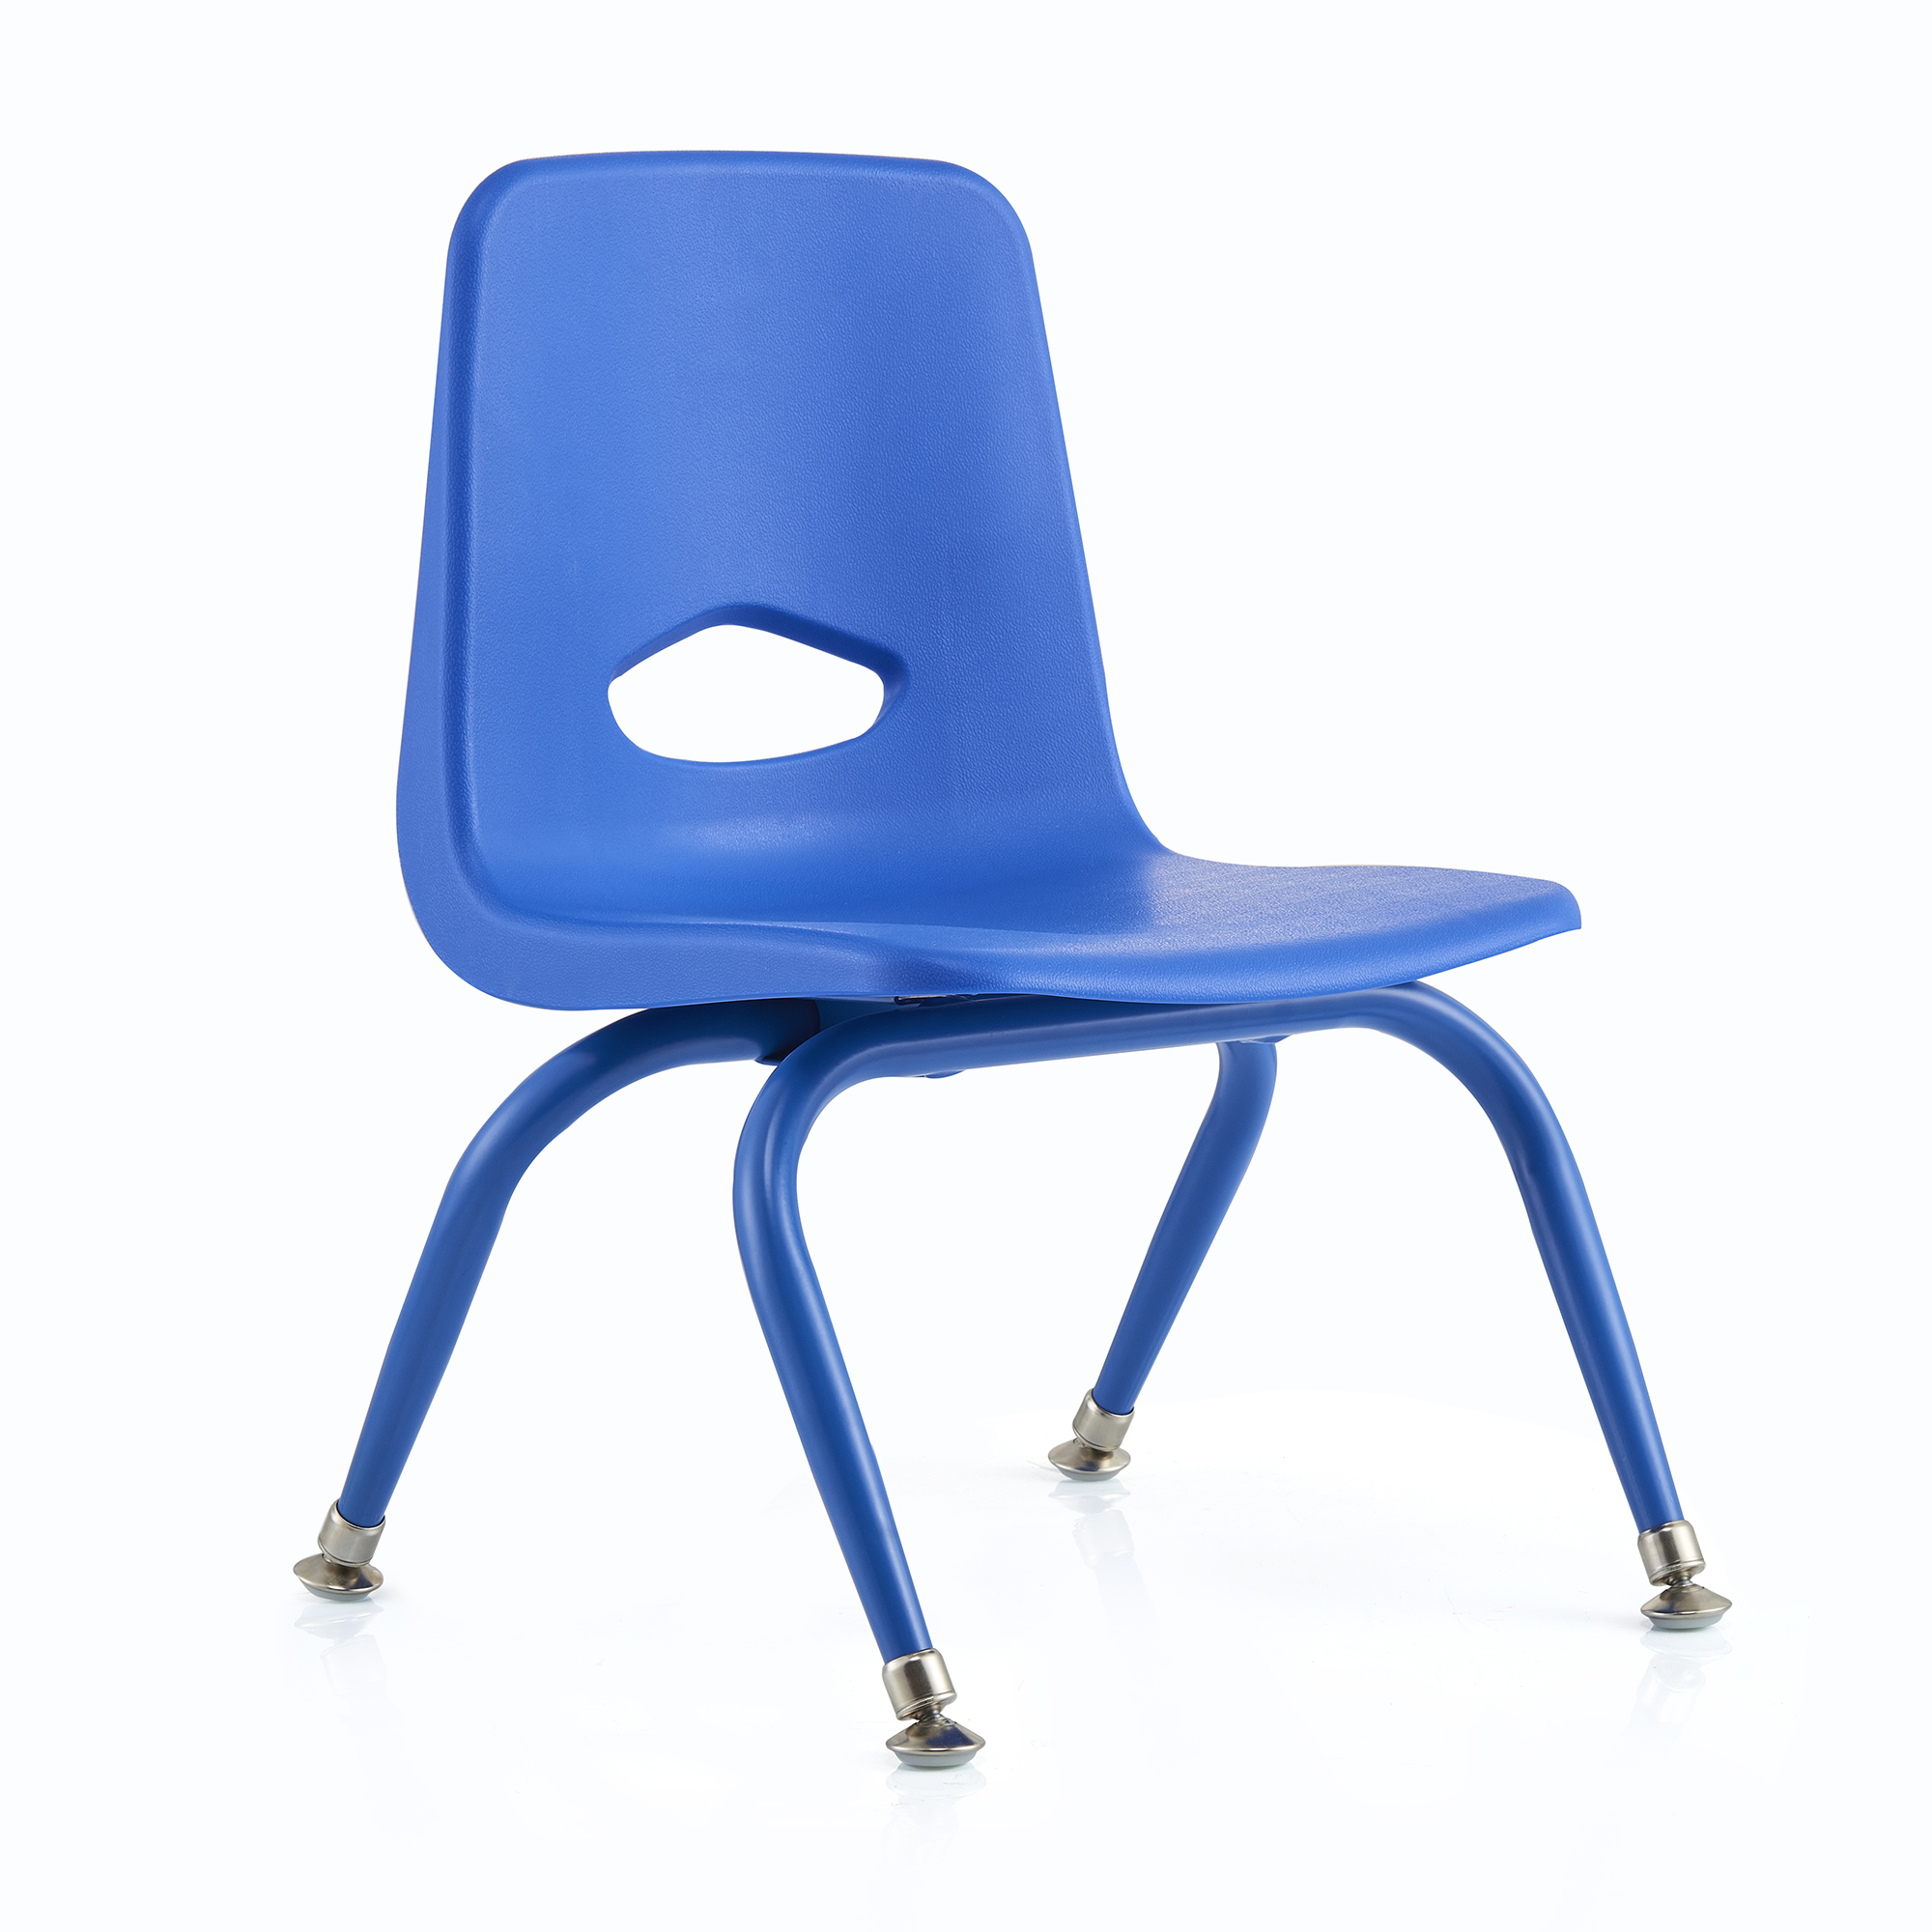 Chair Legs Blue. /Taper-Chair. Chair legs